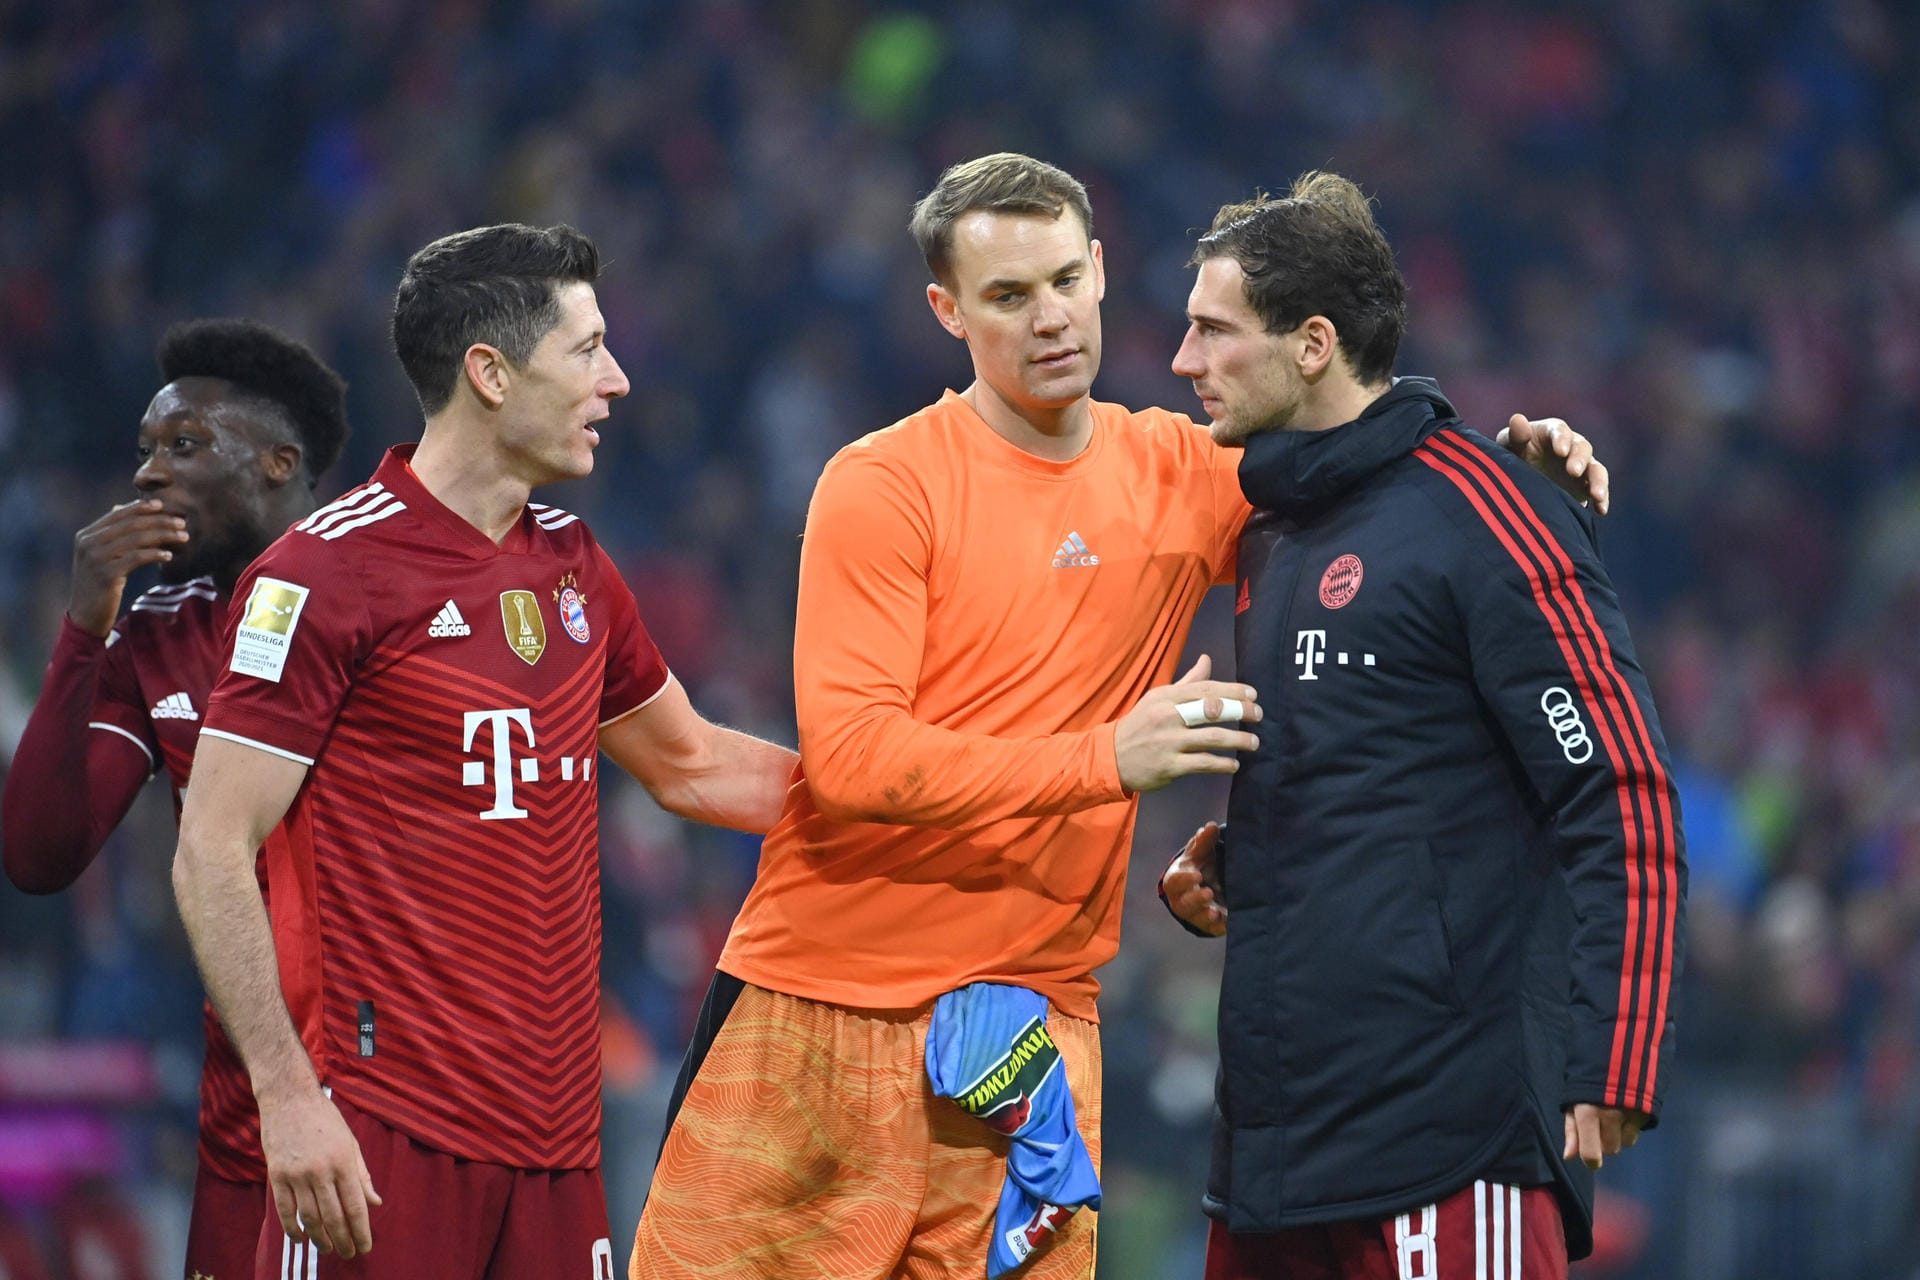 Drei Bayern-Spieler stehen nur noch bis kommenden Sommer unter Vertrag – darunter Nationalspieler Niklas Süle, der zu Borussia Dortmund wechselt. Andere Spieler dagegen sind noch knapp fünf Jahre an den Rekordmeister gebunden. t-online mit einer Übersicht zu den Verträgen aller Profis.